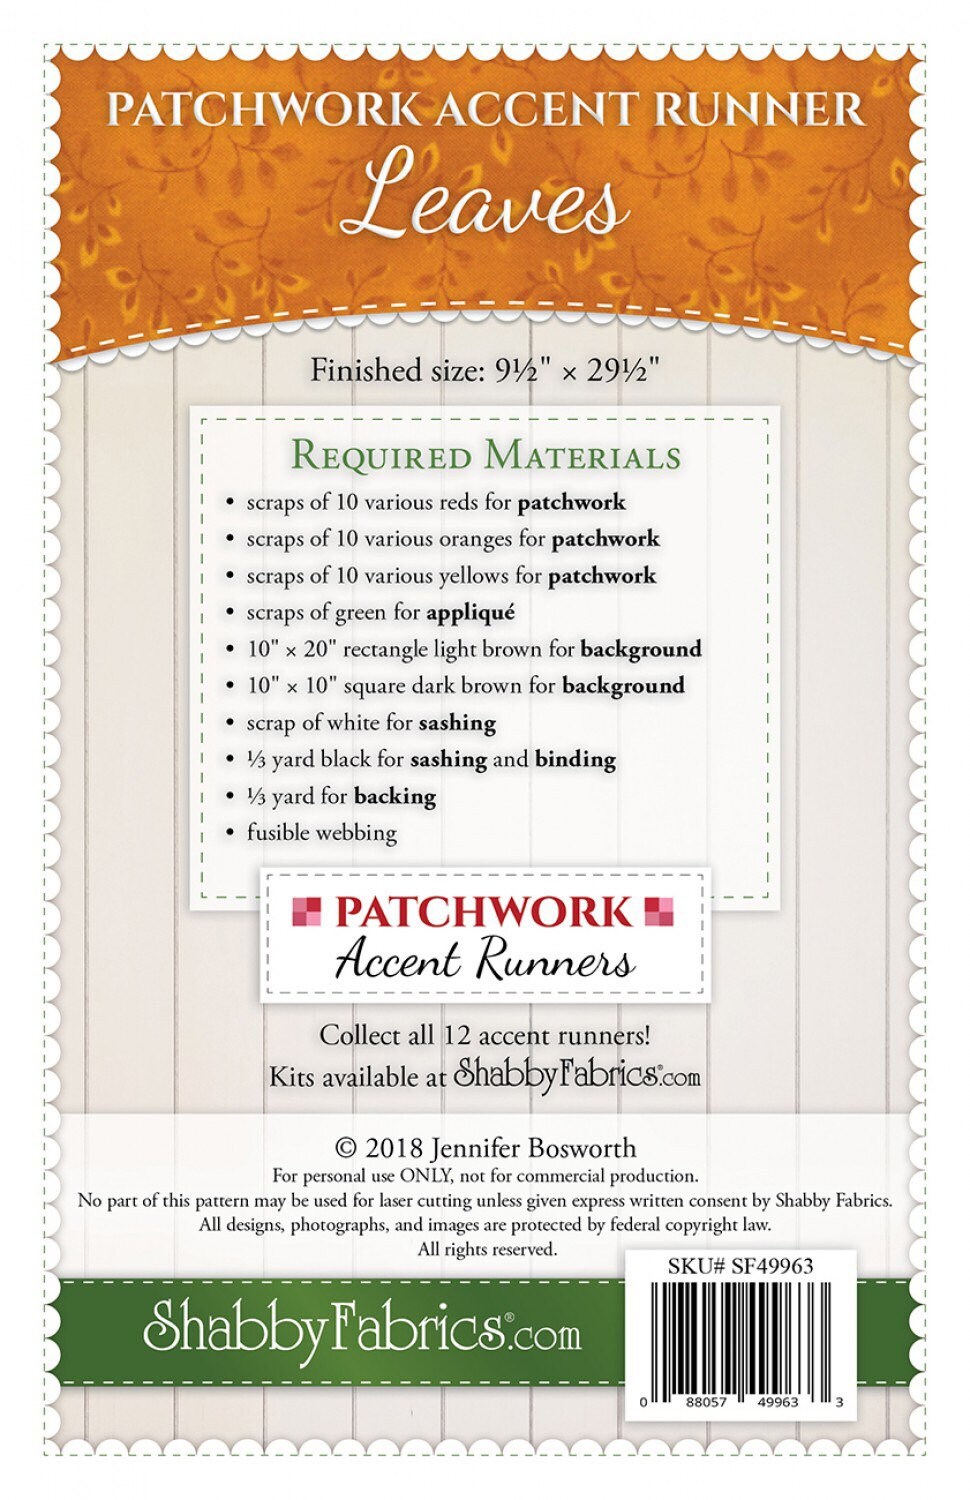 Patchwork Accent Runner Leaves November - Shabby Fabrics - Jennifer Bosworth - Fall Table Runner Pattern